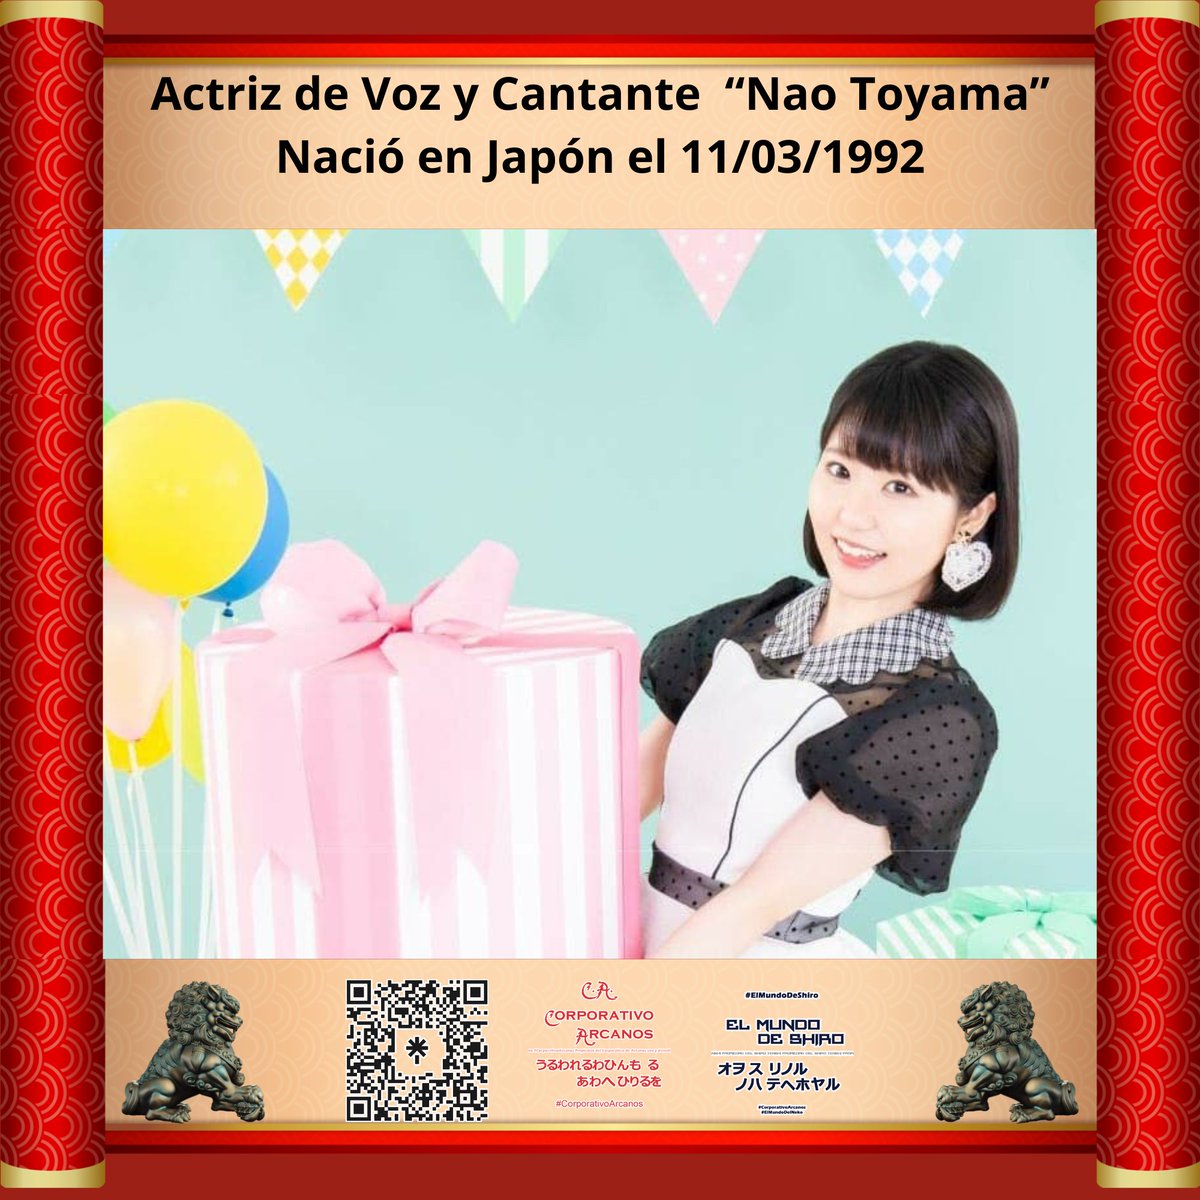 Un día como hoy en 1992 nació la seiyuu 'NAO TOYAMA' la cual es reconocida por interpretar a personajes como Ruka Sarashina, Tomoe Koga, Honami Ichinose y Yui Yuigahama entre algunas. #Cumpleaños #NaoToyama #東山奈央 #ActrizDeVoz.